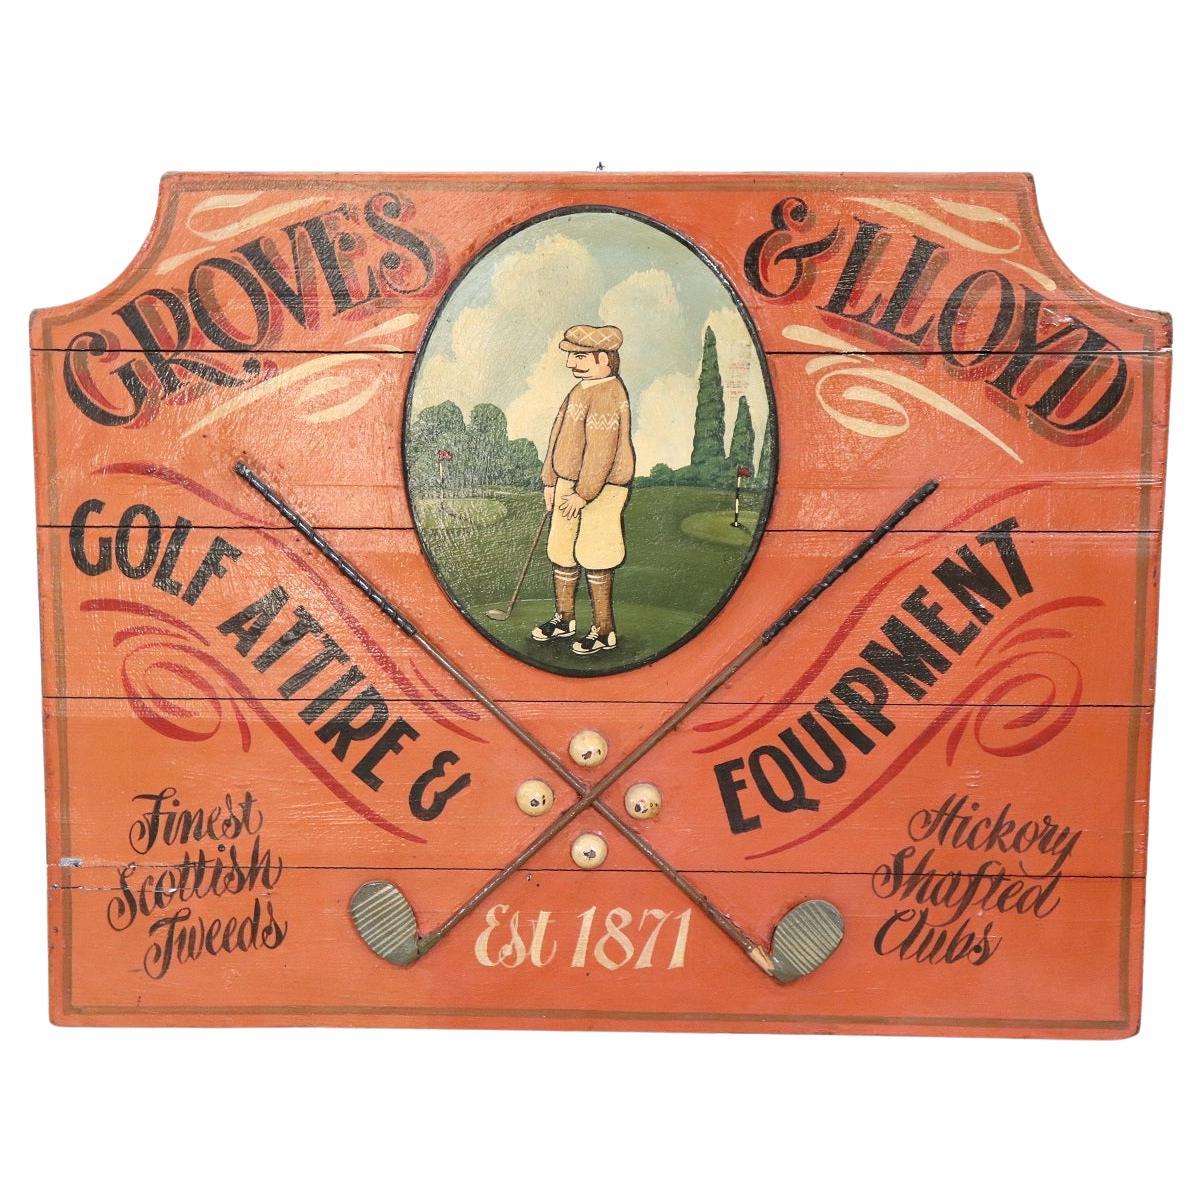 Panneau publicitaire vintage peint à la main sur bois pour les équipements de golf, années 1920